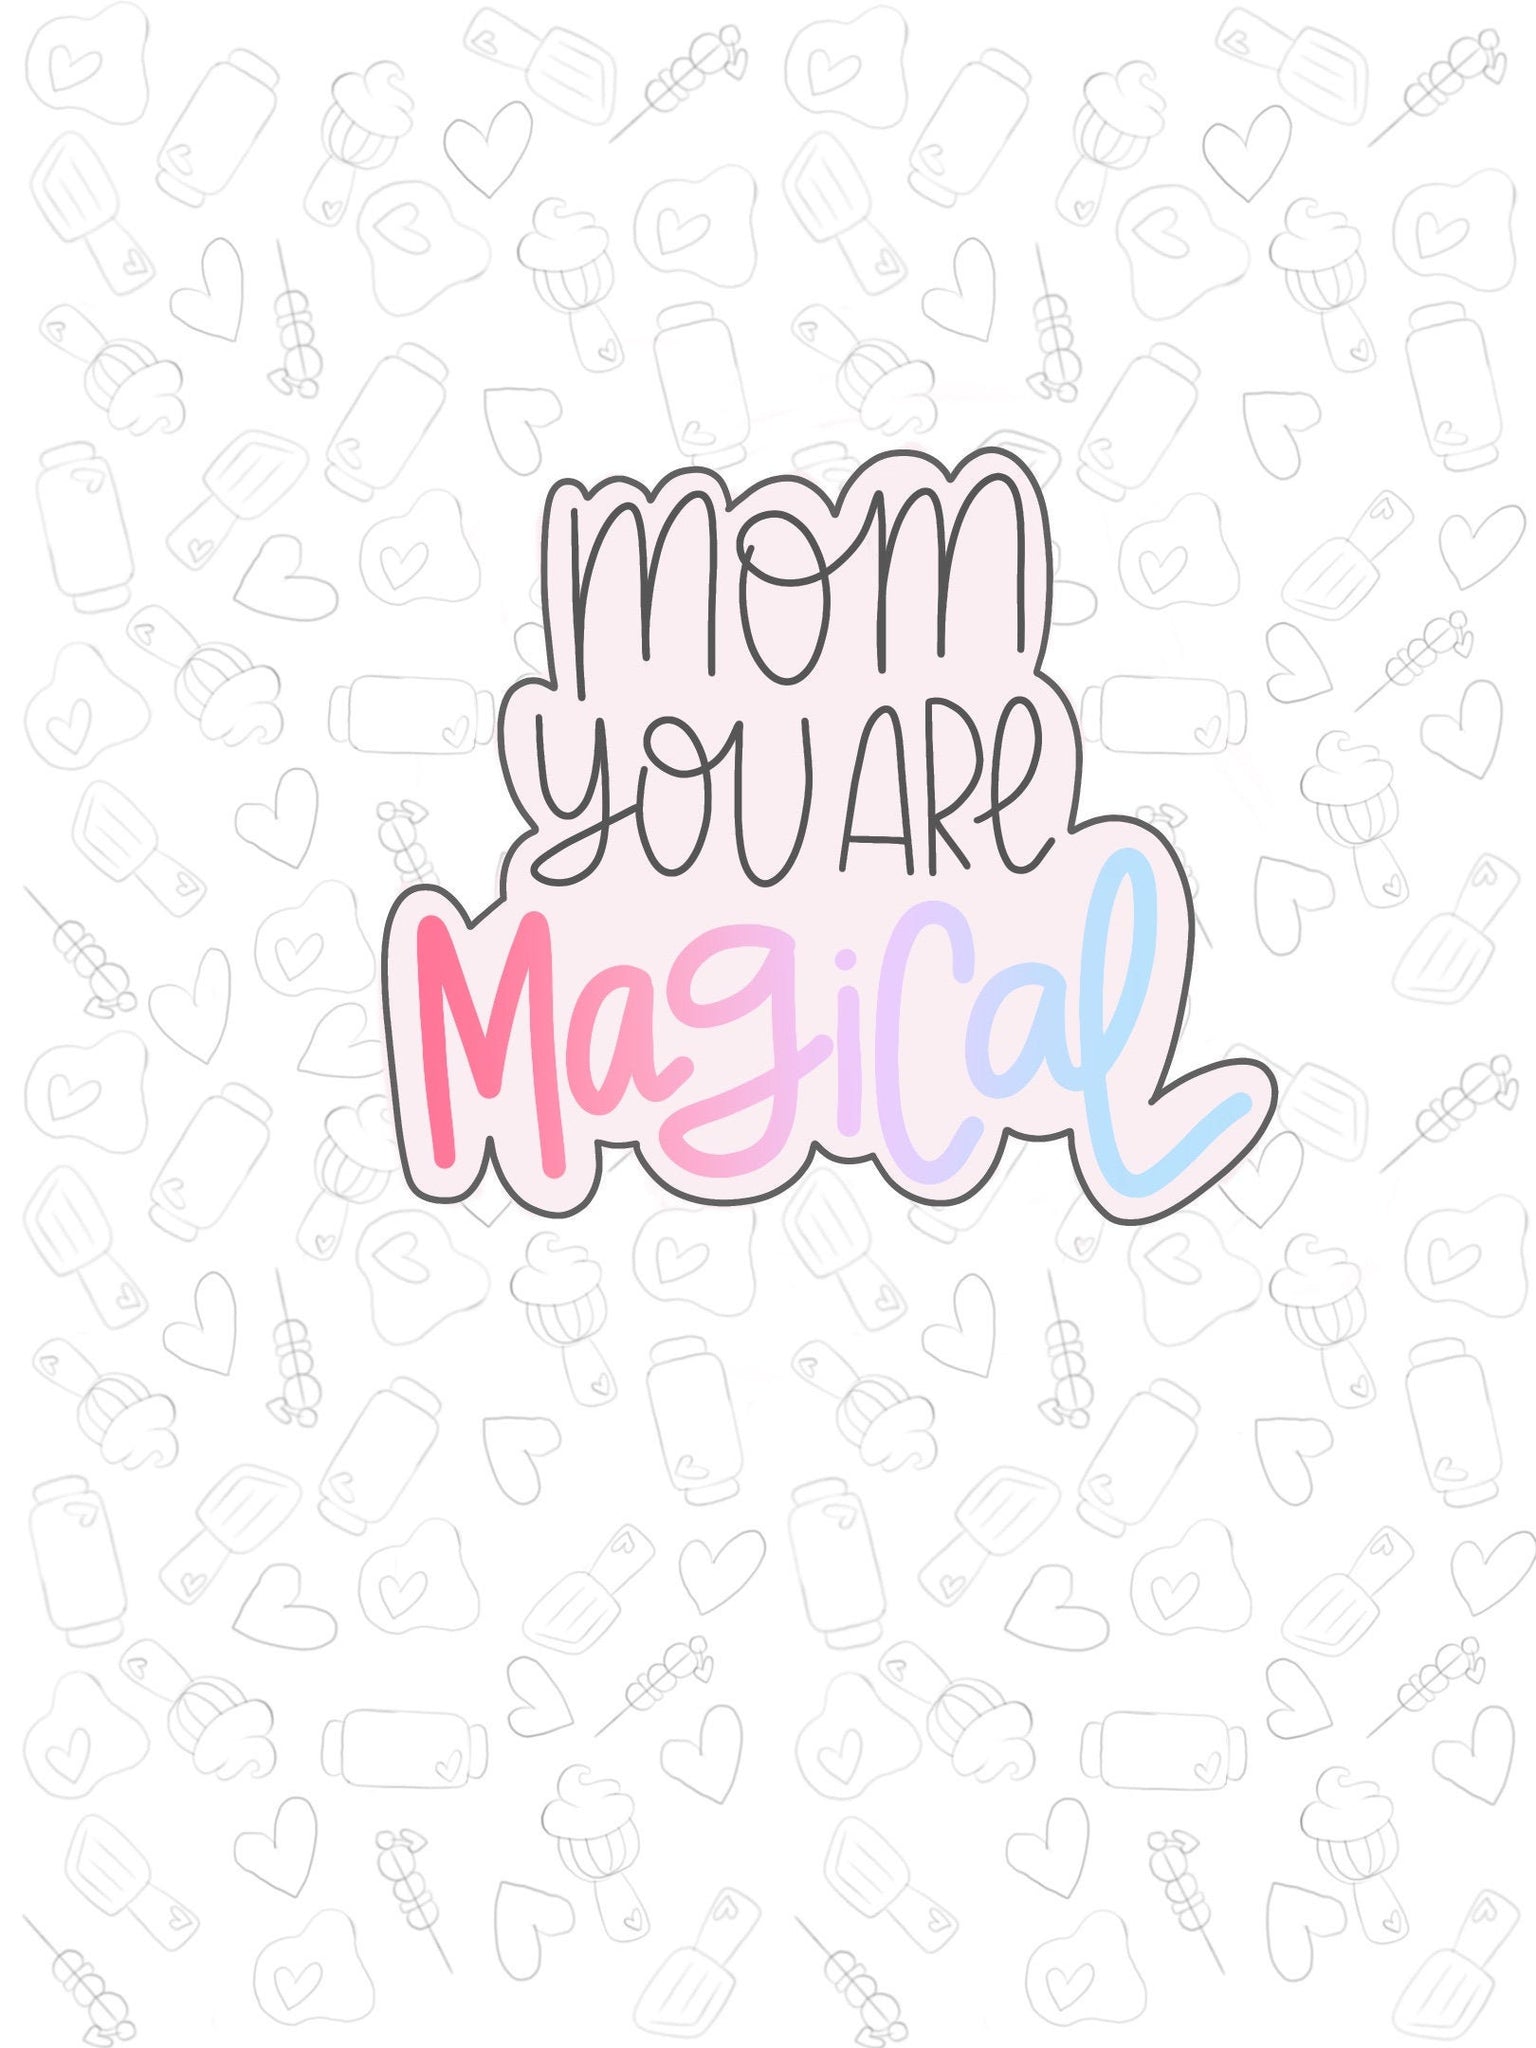 Magical Mom Plaque 2021